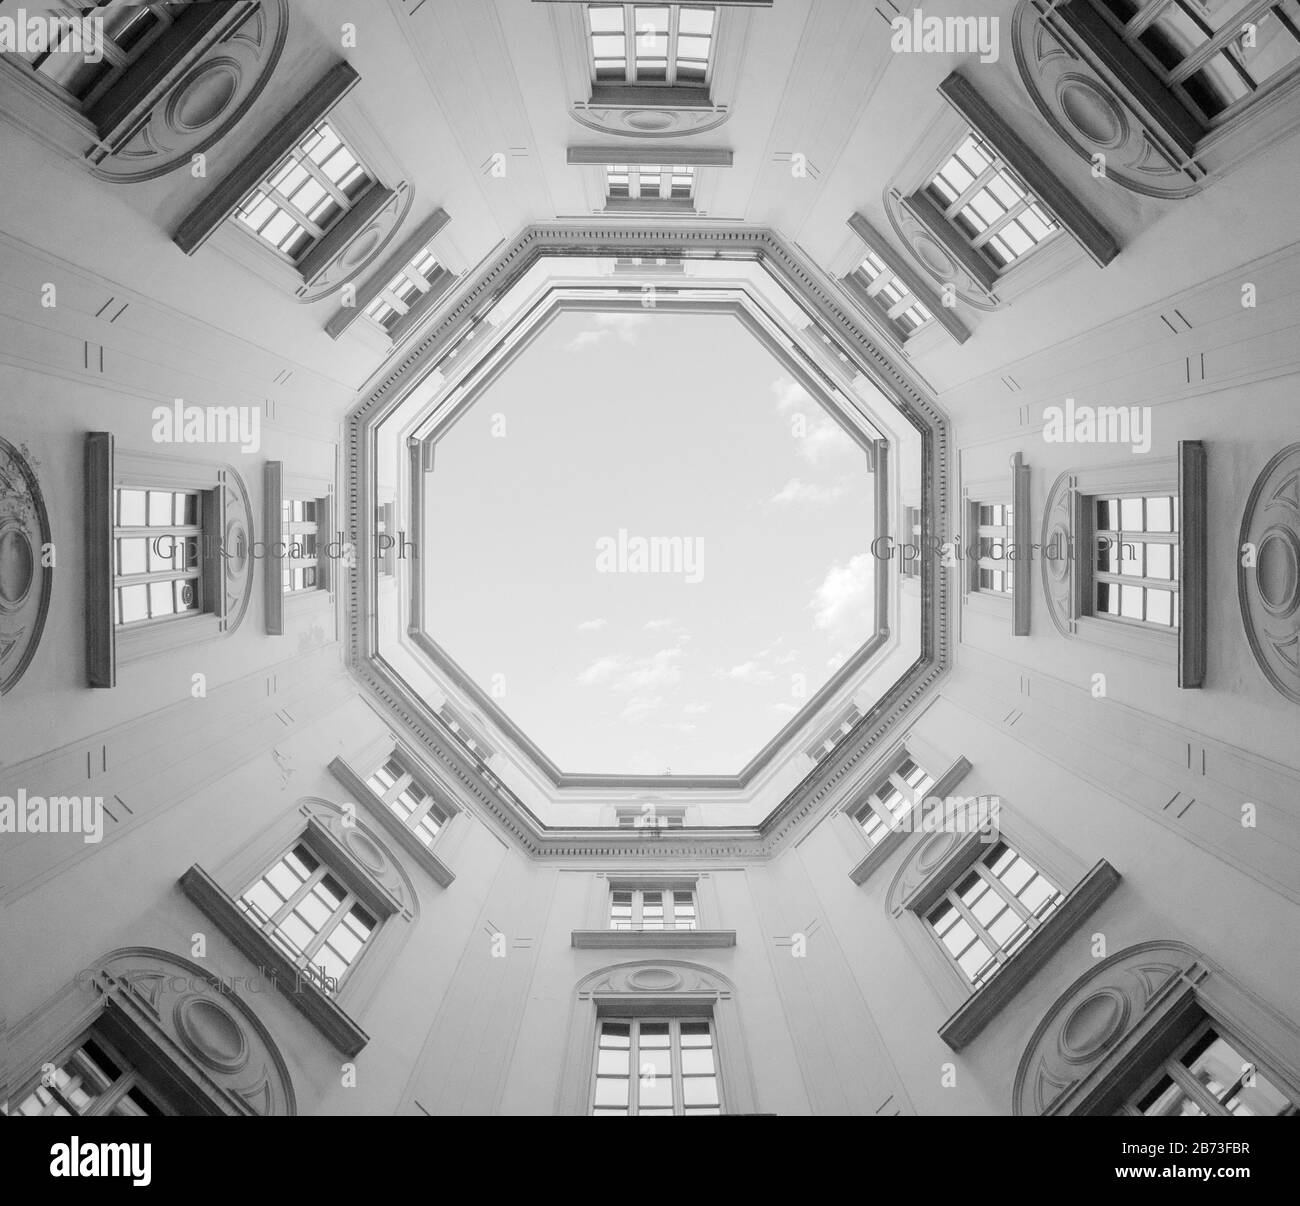 l'apertura nel tetto di un antico edificio permette alla luce di penetrare. nero e white.milan - italia Foto Stock